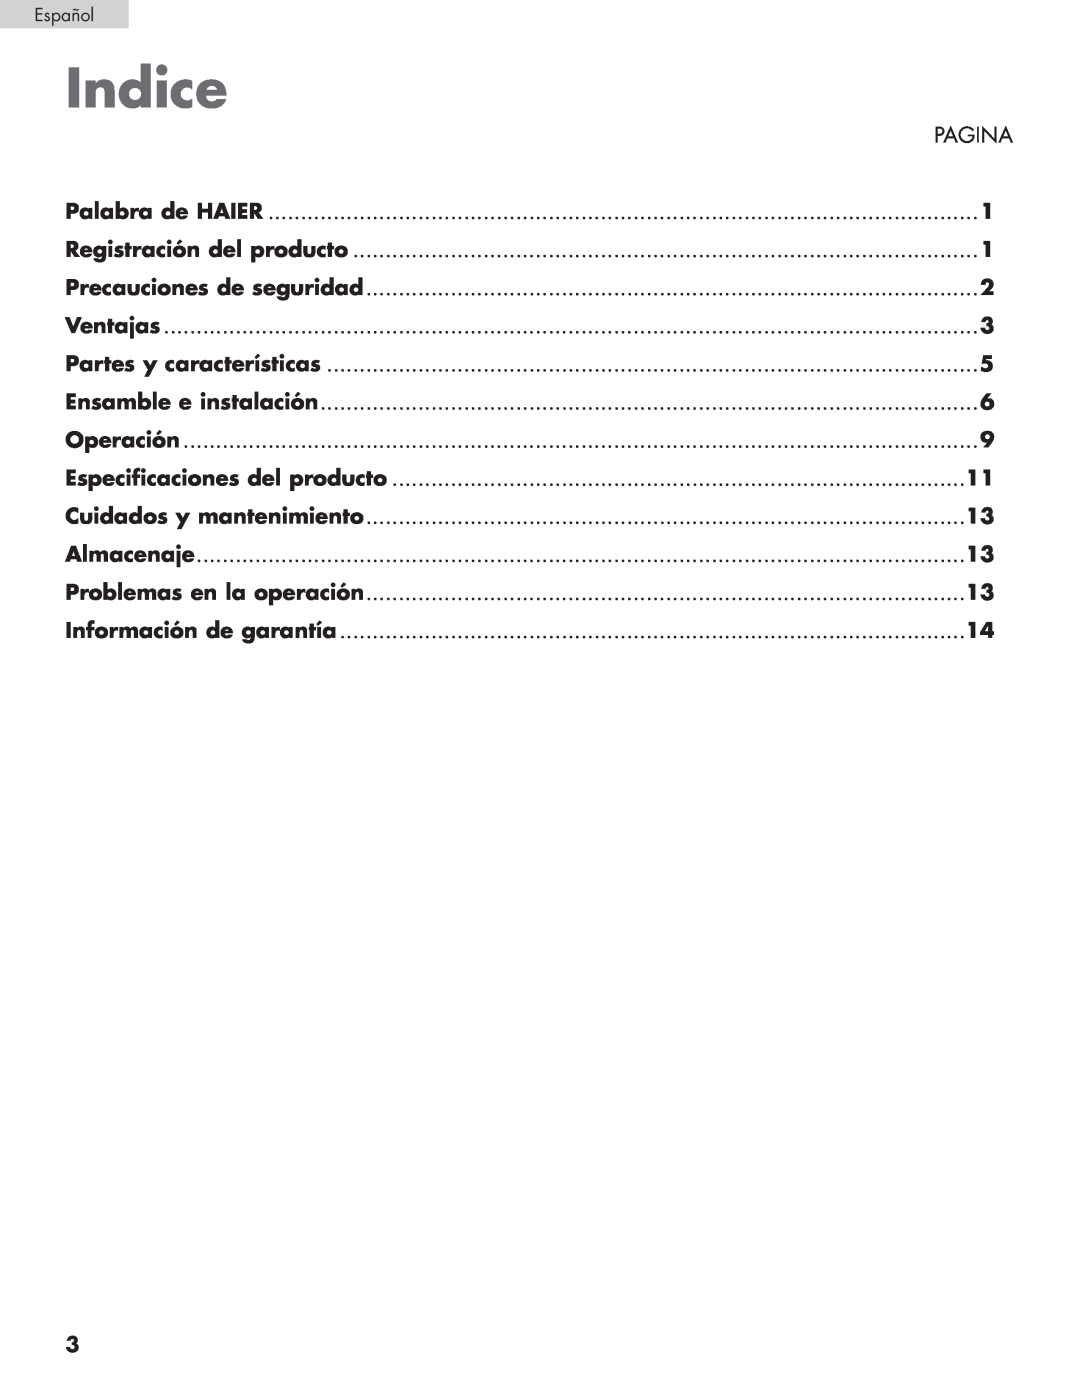 Haier HPRD12XH7 Indice, Pagina, Palabra de HAIER, Registración del producto, Precauciones de seguridad, Ventajas 